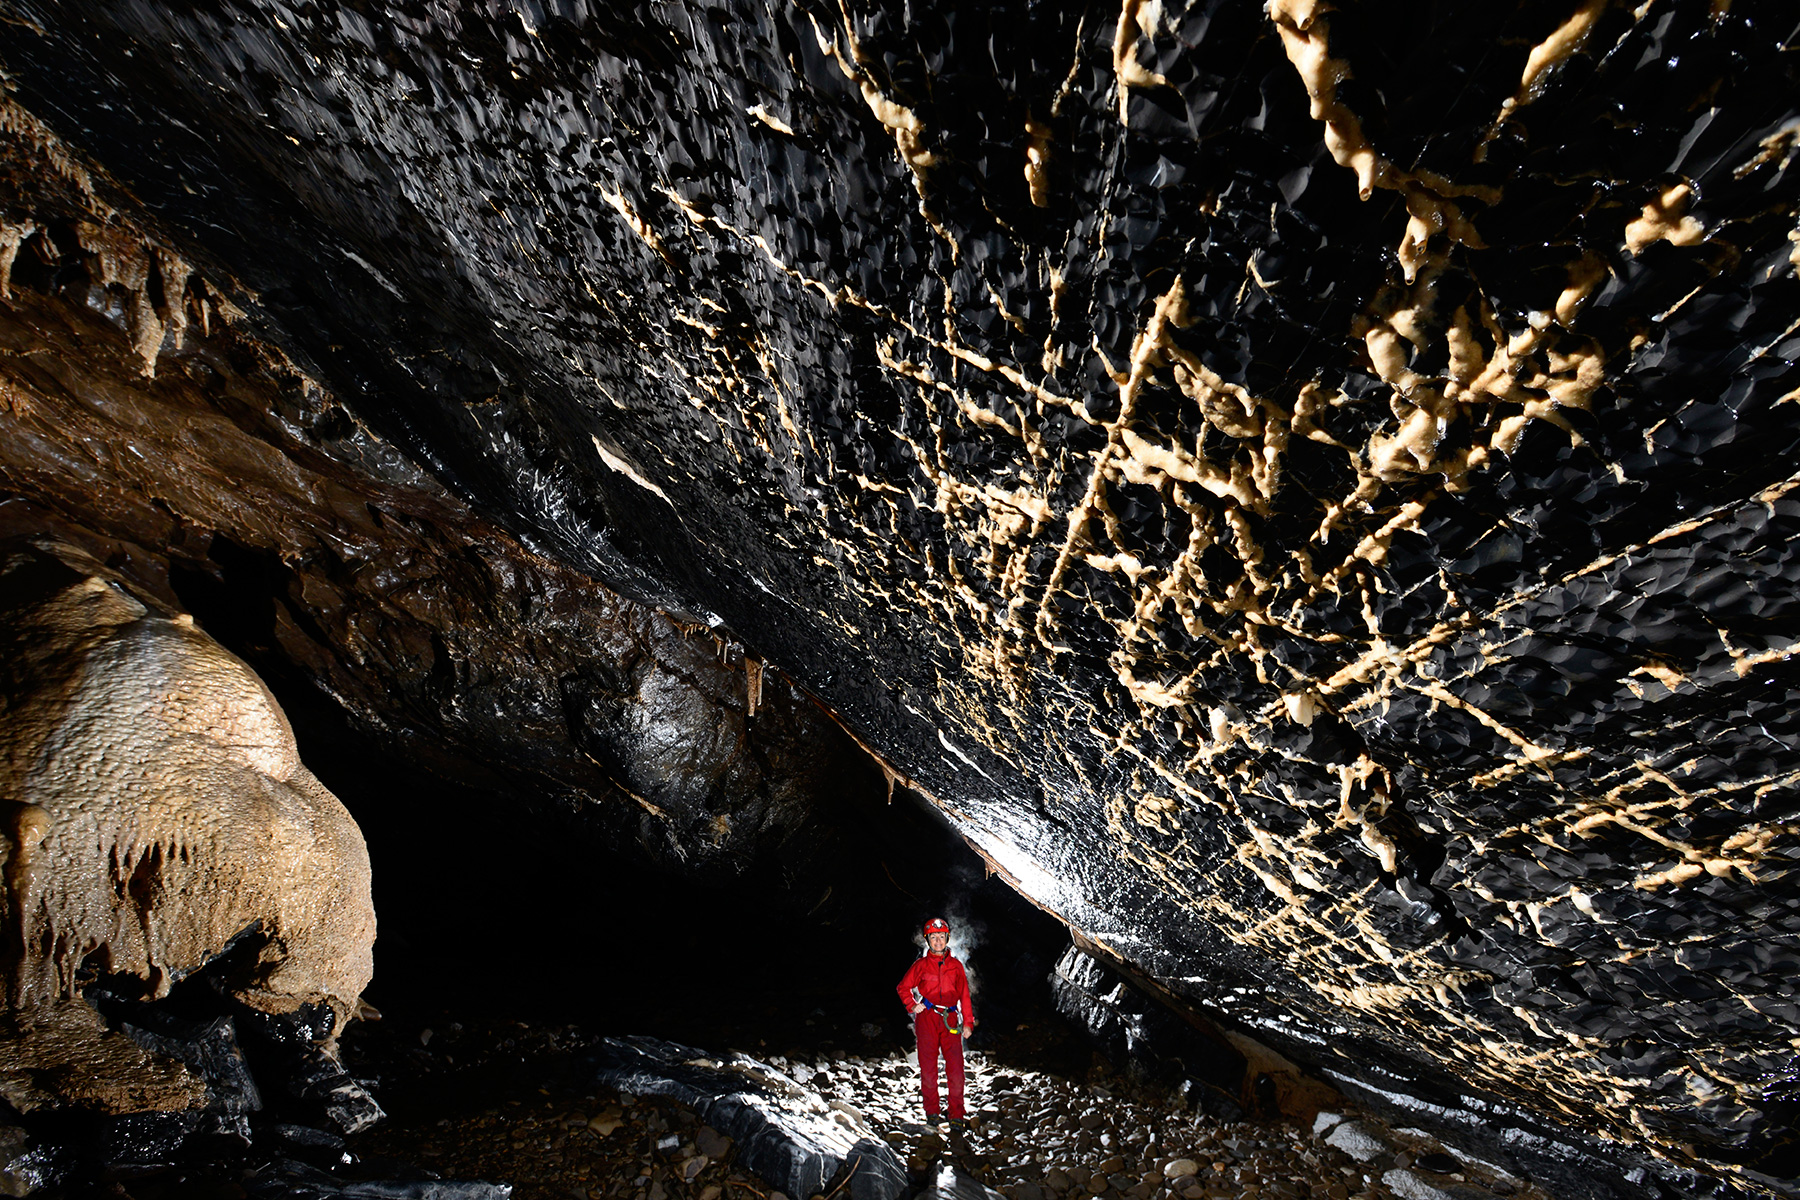 Stara Amaterska Cave (Tchéquie, Moravie, Parc National de Podiji) - Plafond avec fractures remplies de calcite blanche dans les calcaires dévoniens noirs. Spéléo en fond. 